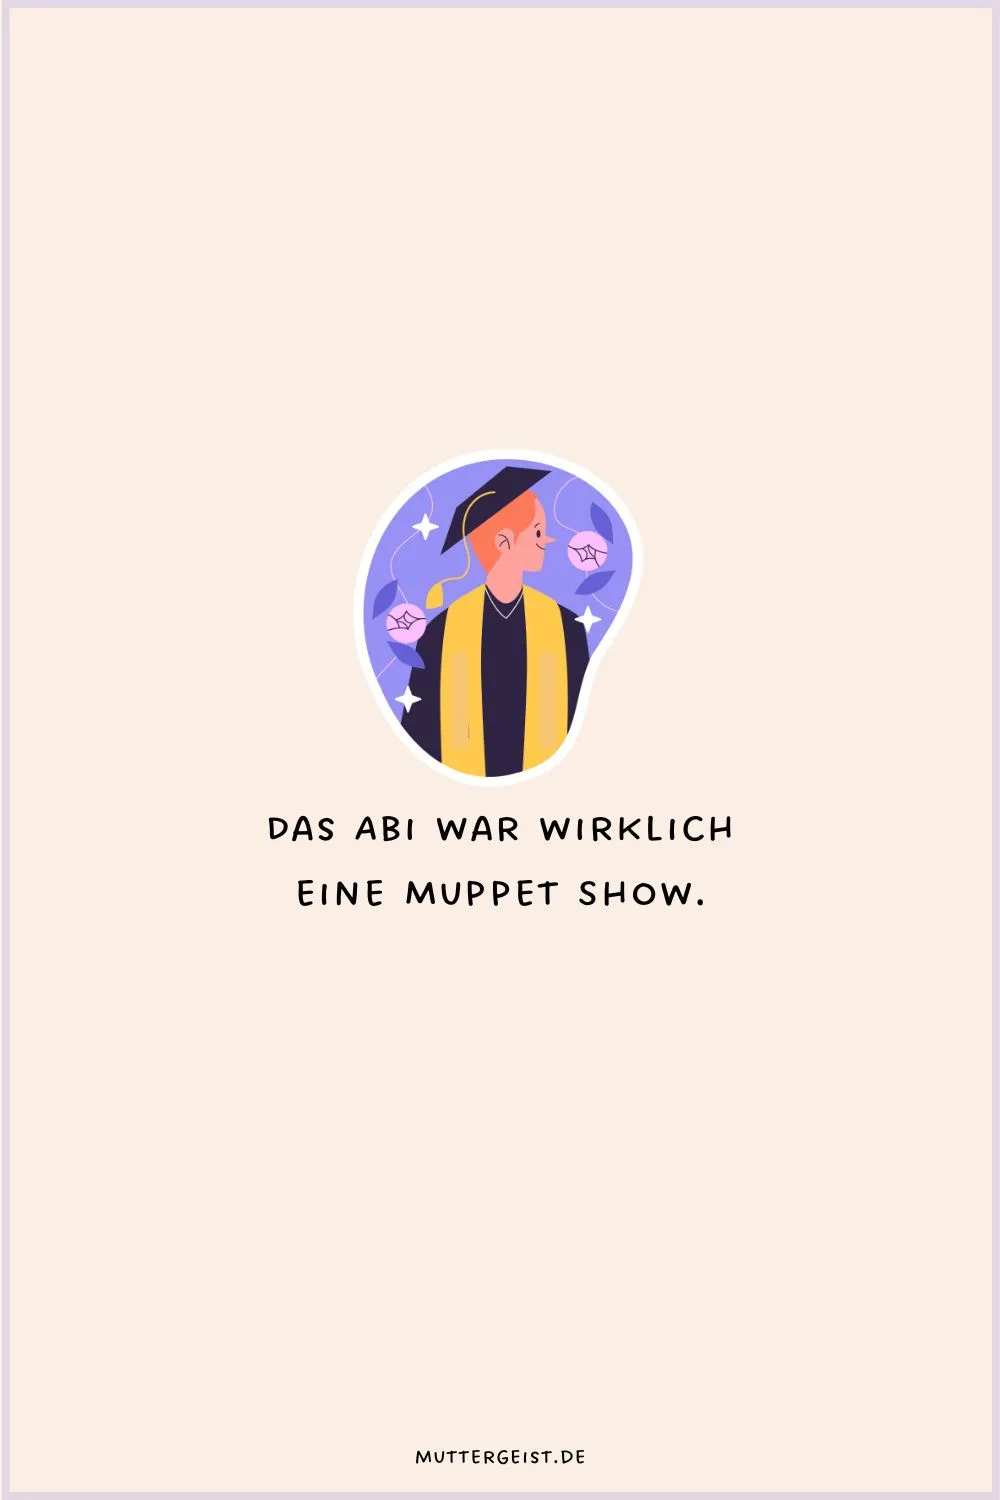 Das Abi war wirklich eine Muppet Show